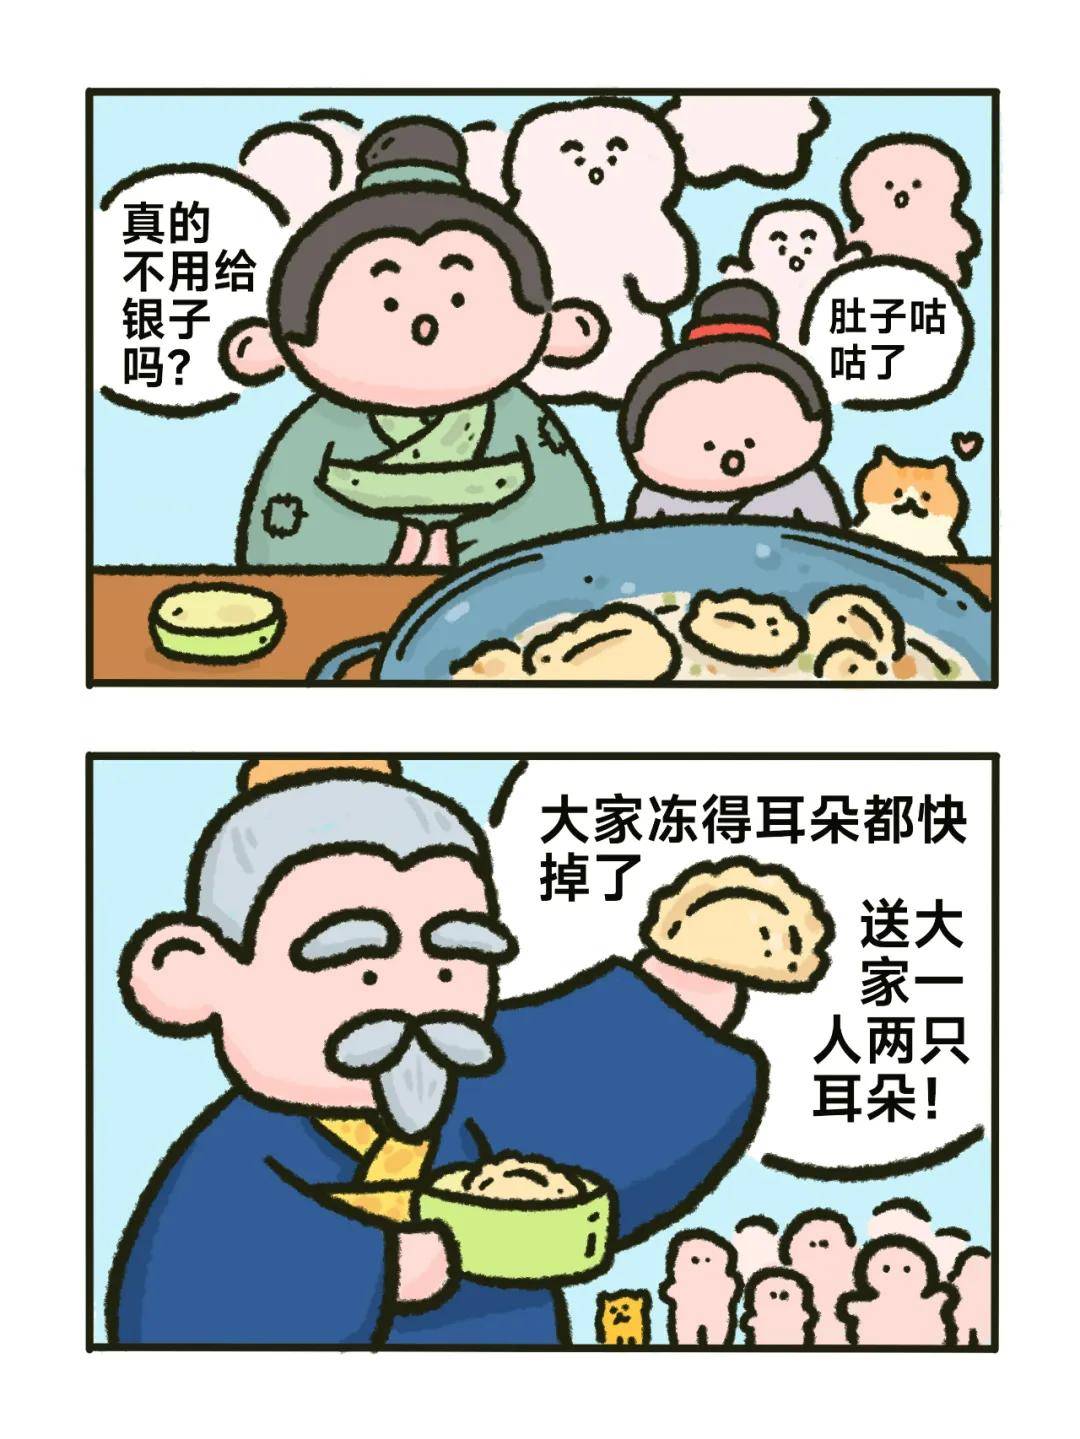 饺子居然是医圣张仲景发明的